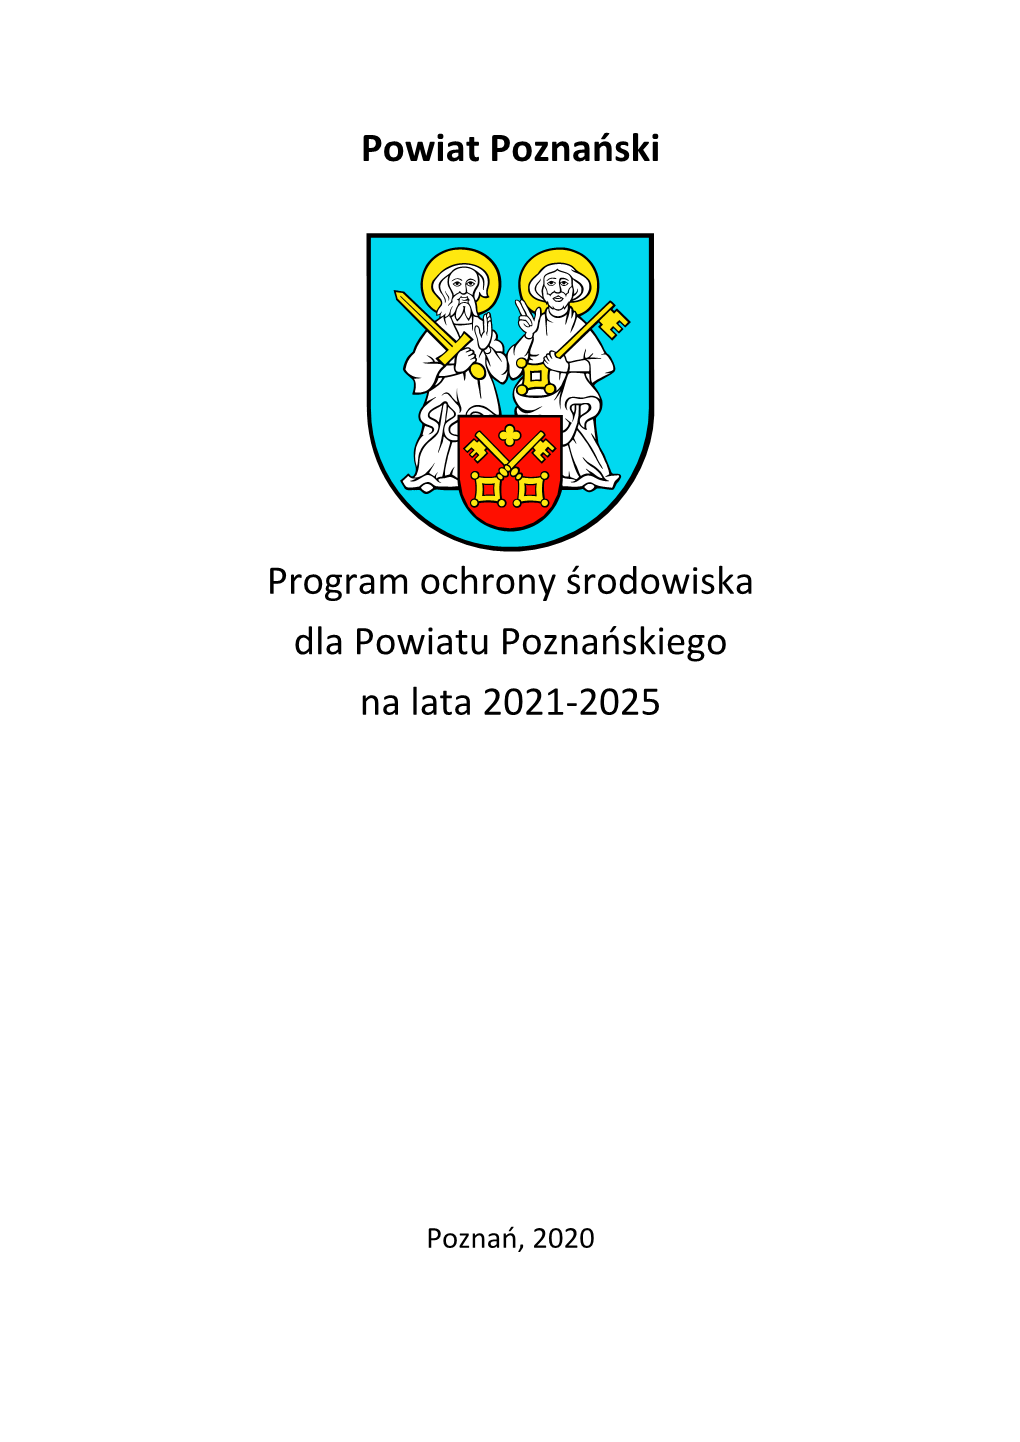 Powiat Poznański Program Ochrony Środowiska Dla Powiatu